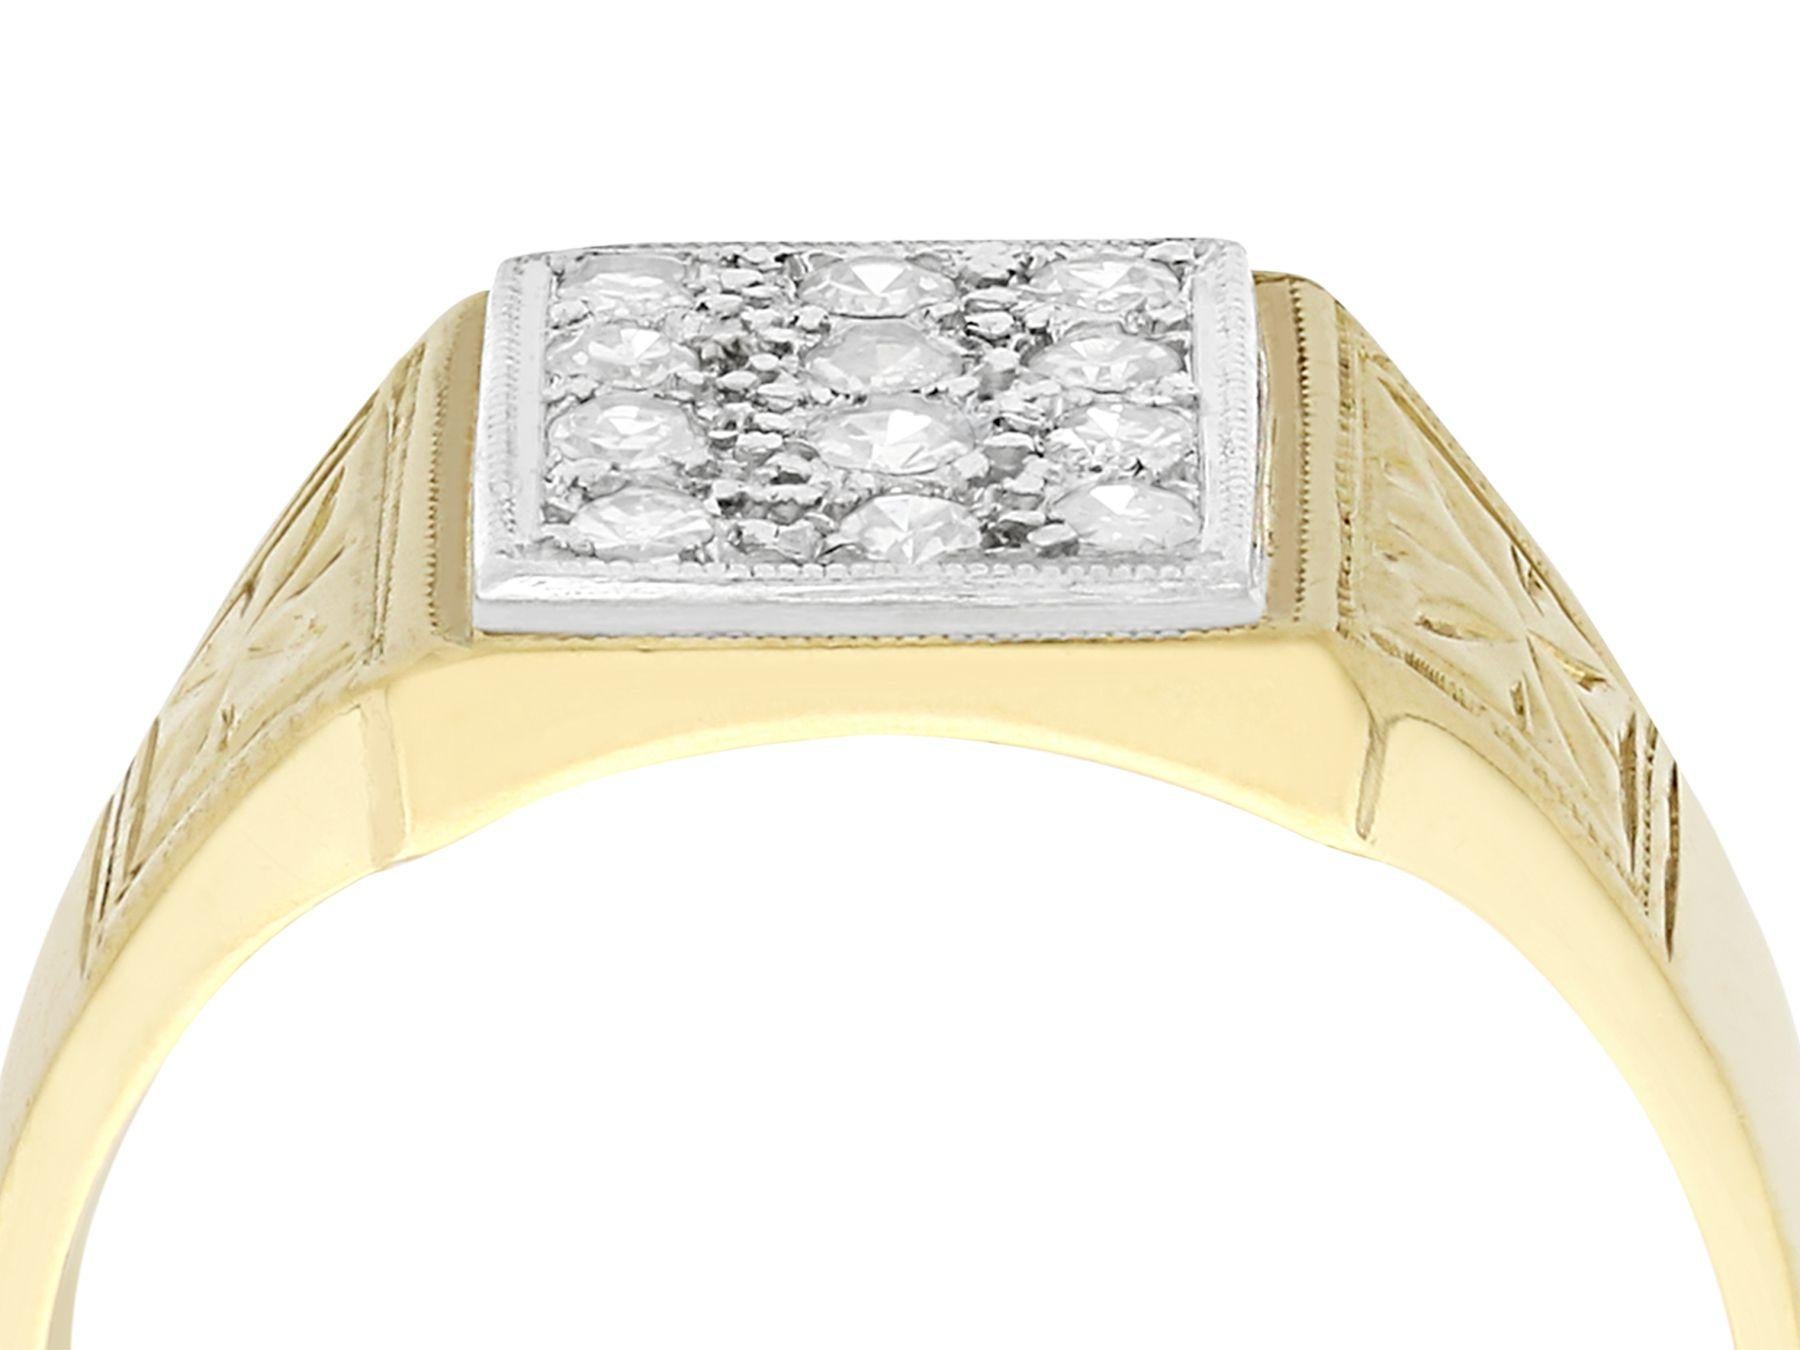 Ein beeindruckender Vintage-Ring mit 0,52 Karat Diamanten und 18 Karat Gelbgold und 18 Karat Weißgold im Stil eines Siegelrings; Teil unserer vielfältigen Diamantschmuckkollektionen.

Dieser feine und beeindruckende diamantbesetzte Siegelring ist